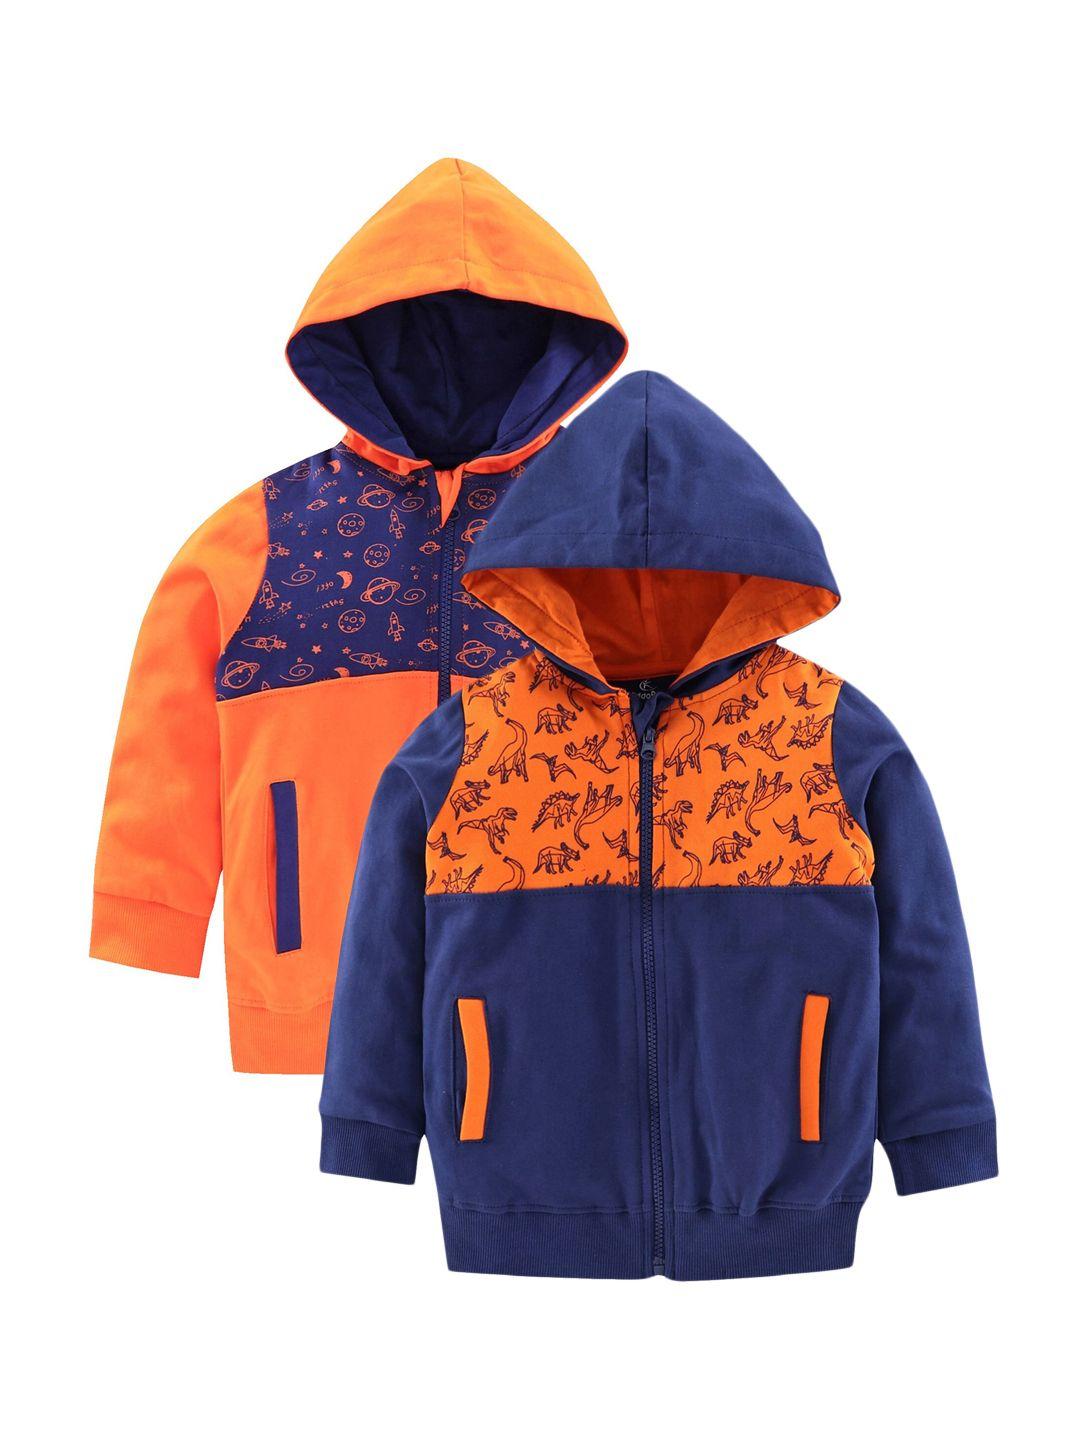 kiddopanti-boys-orange-&-navy-blue-printed-hooded-sweatshirt-pack-of-2